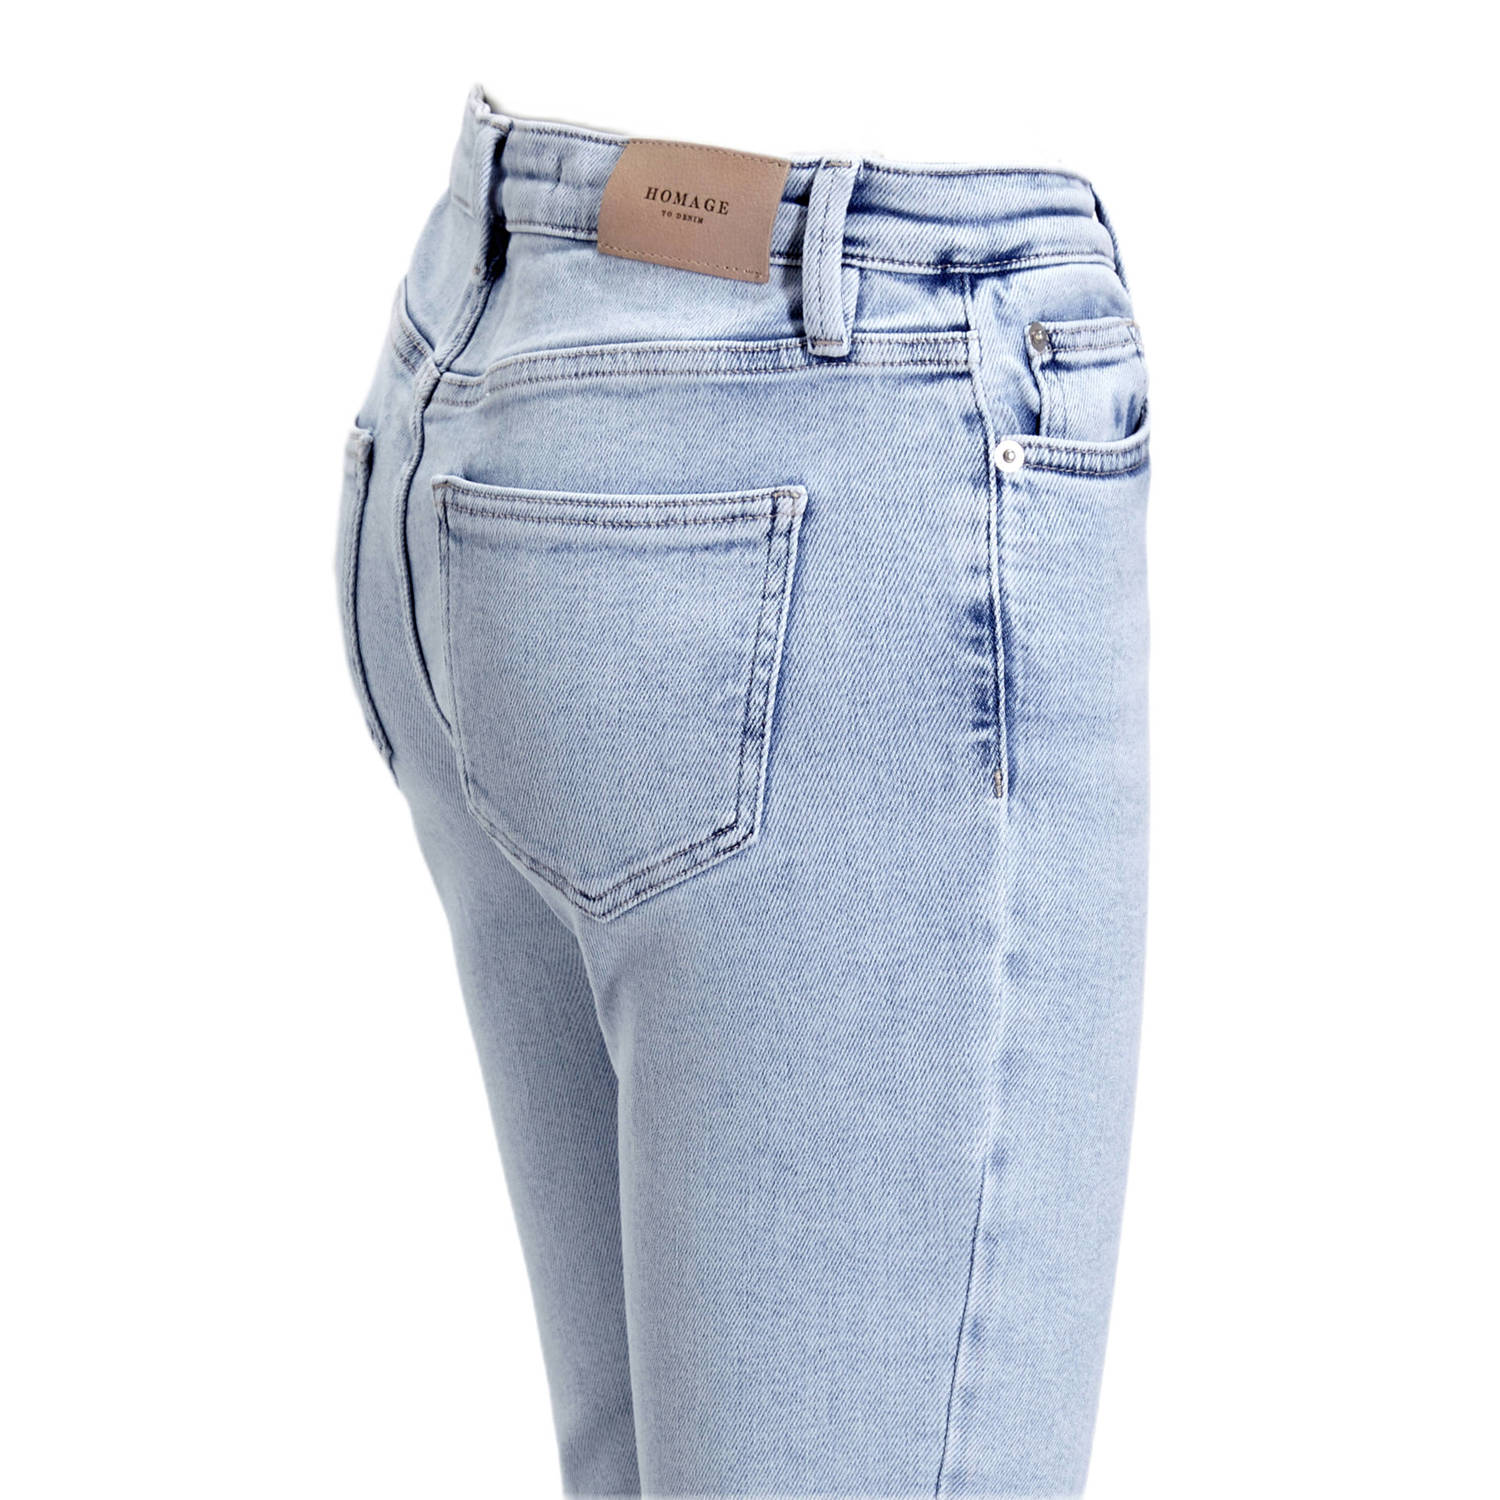 Homage to Denim cropped high waist flared jeans Debbie light vintage